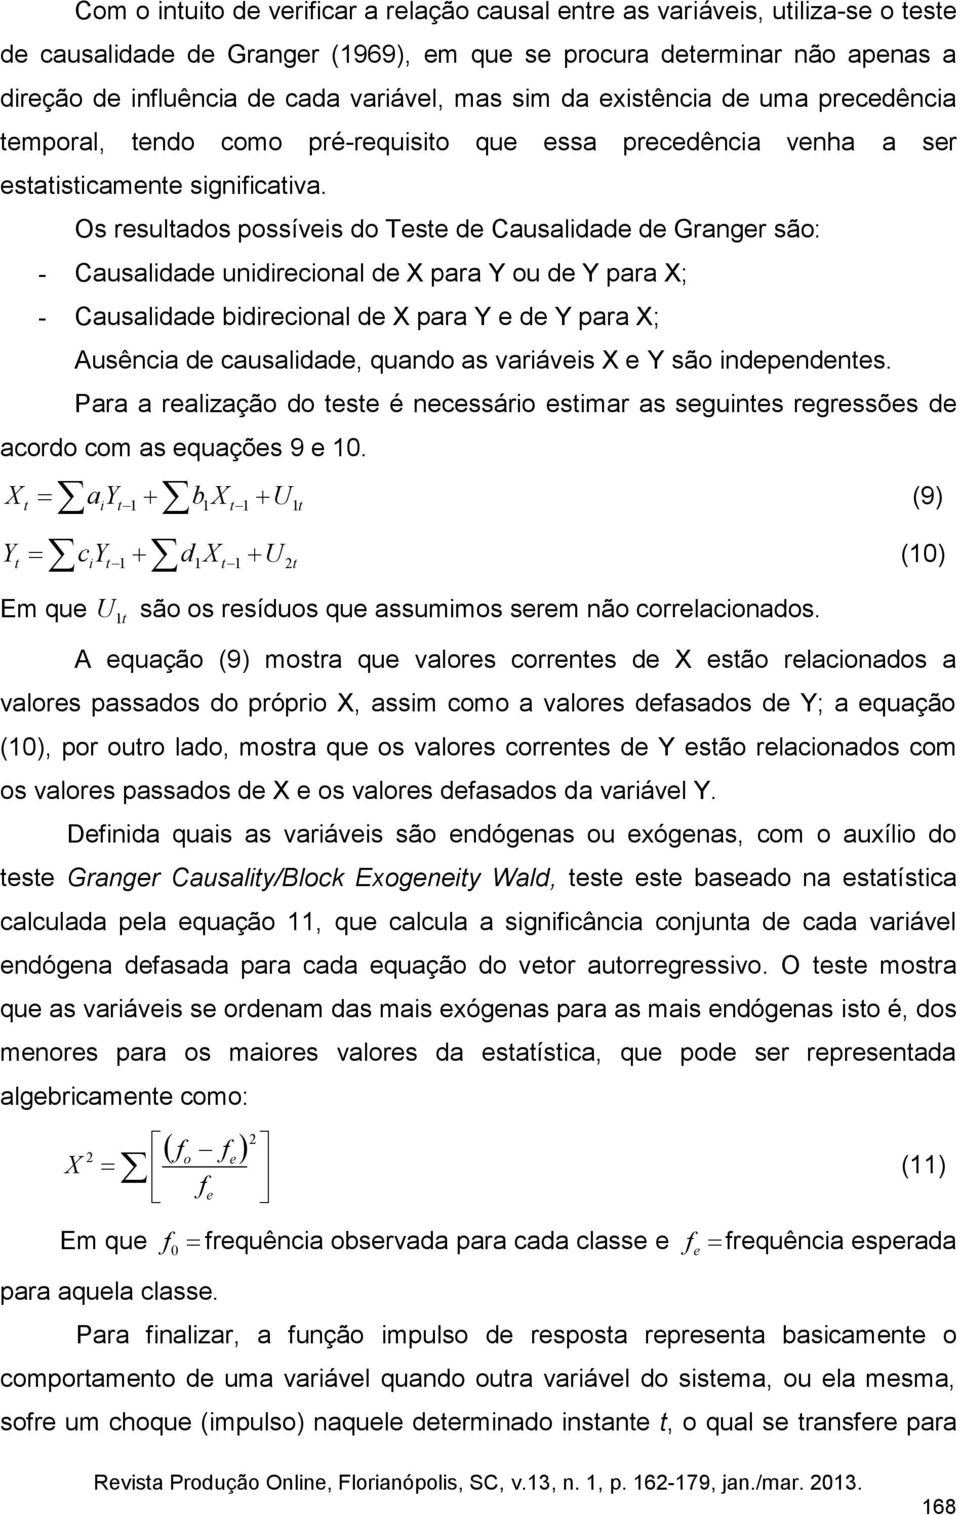 Os resultados possíveis do Teste de Causalidade de Granger são: - Causalidade unidirecional de X para Y ou de Y para X; - Causalidade bidirecional de X para Y e de Y para X; Ausência de causalidade,